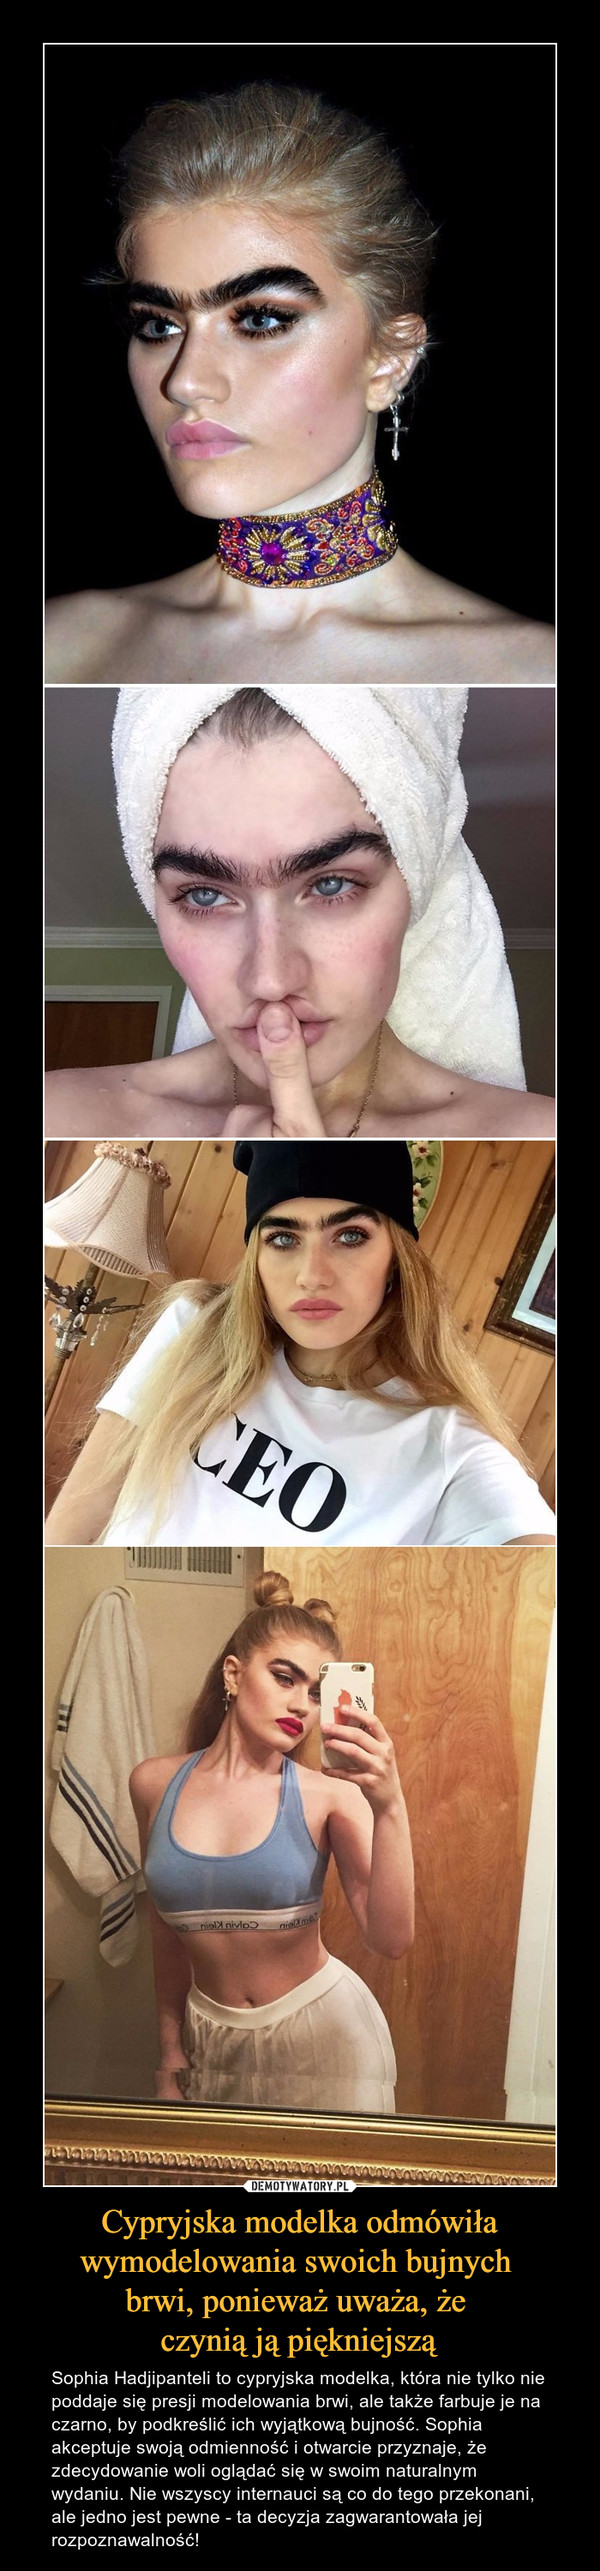 Cypryjska modelka odmówiła wymodelowania swoich bujnych 
brwi, ponieważ uważa, że 
czynią ją piękniejszą